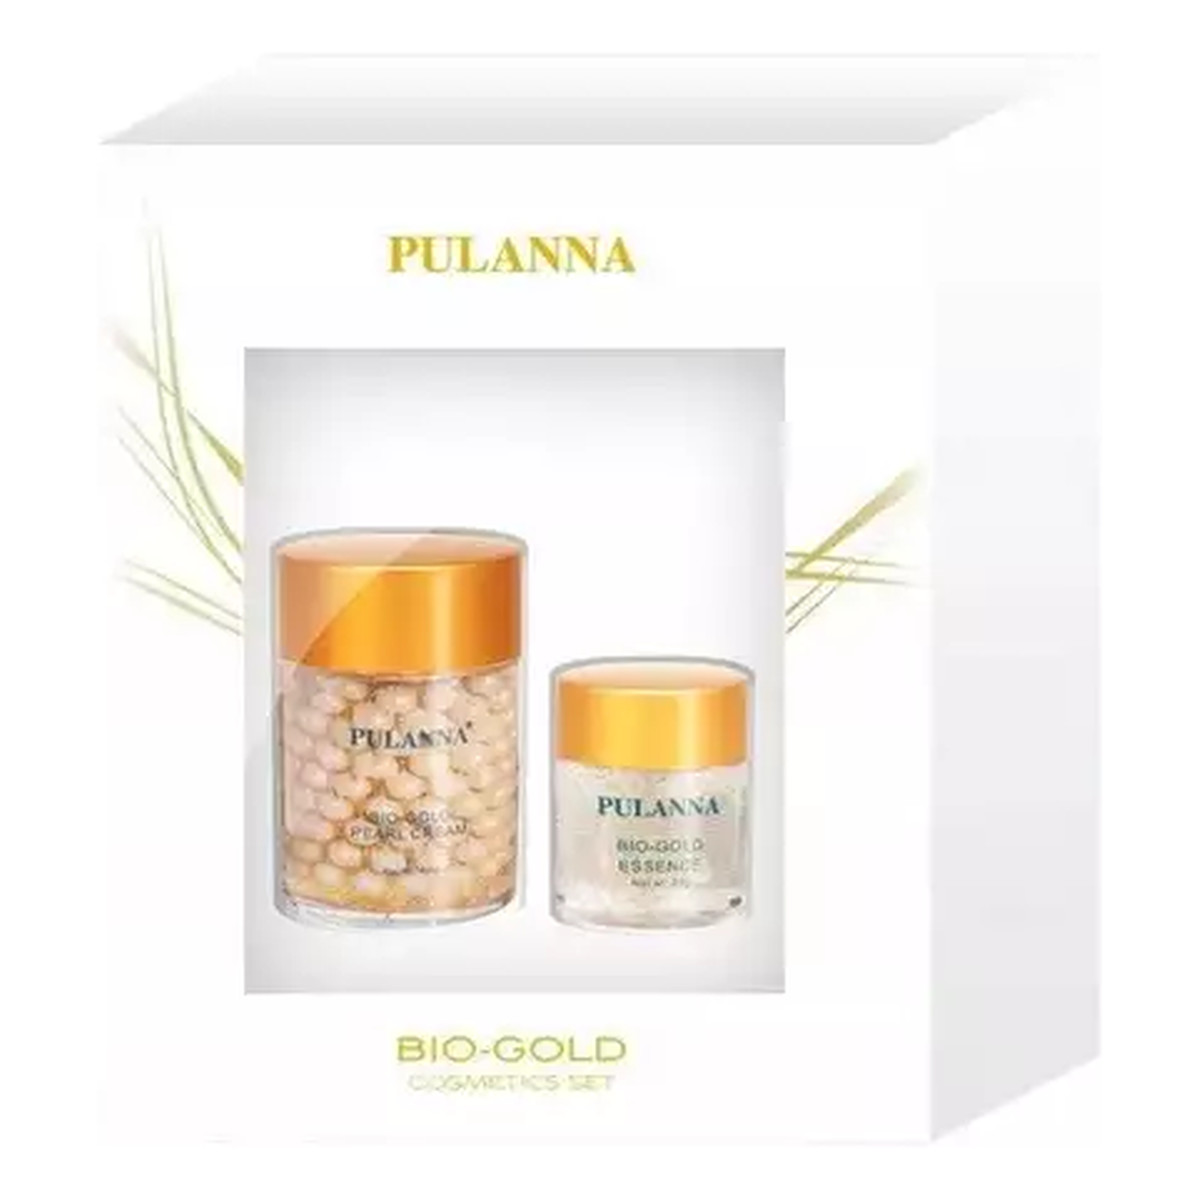 Pulanna Bio-Gold Zestaw kosmetyków Krem perłowy ze złotem + Żel ze złotem pod oczy